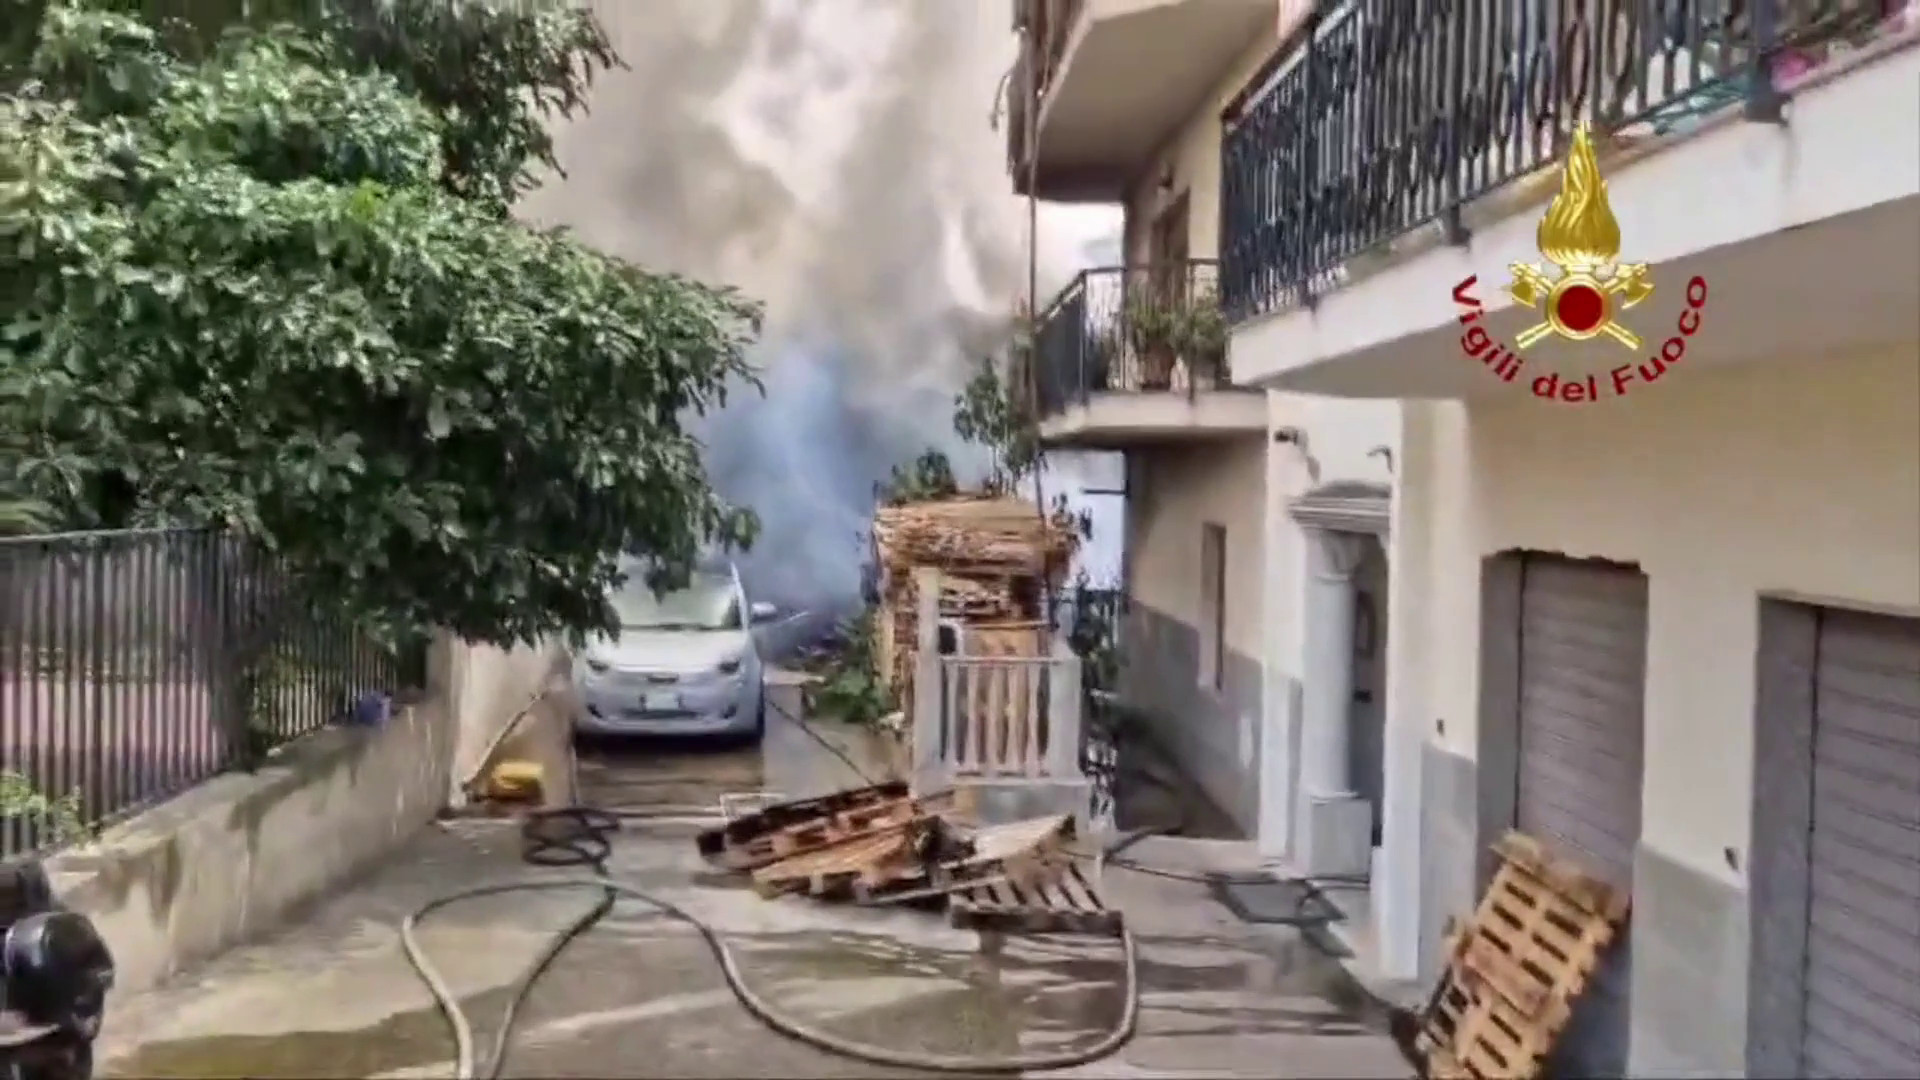 Incendio in un capannone a Reggio Calabria, le immagini